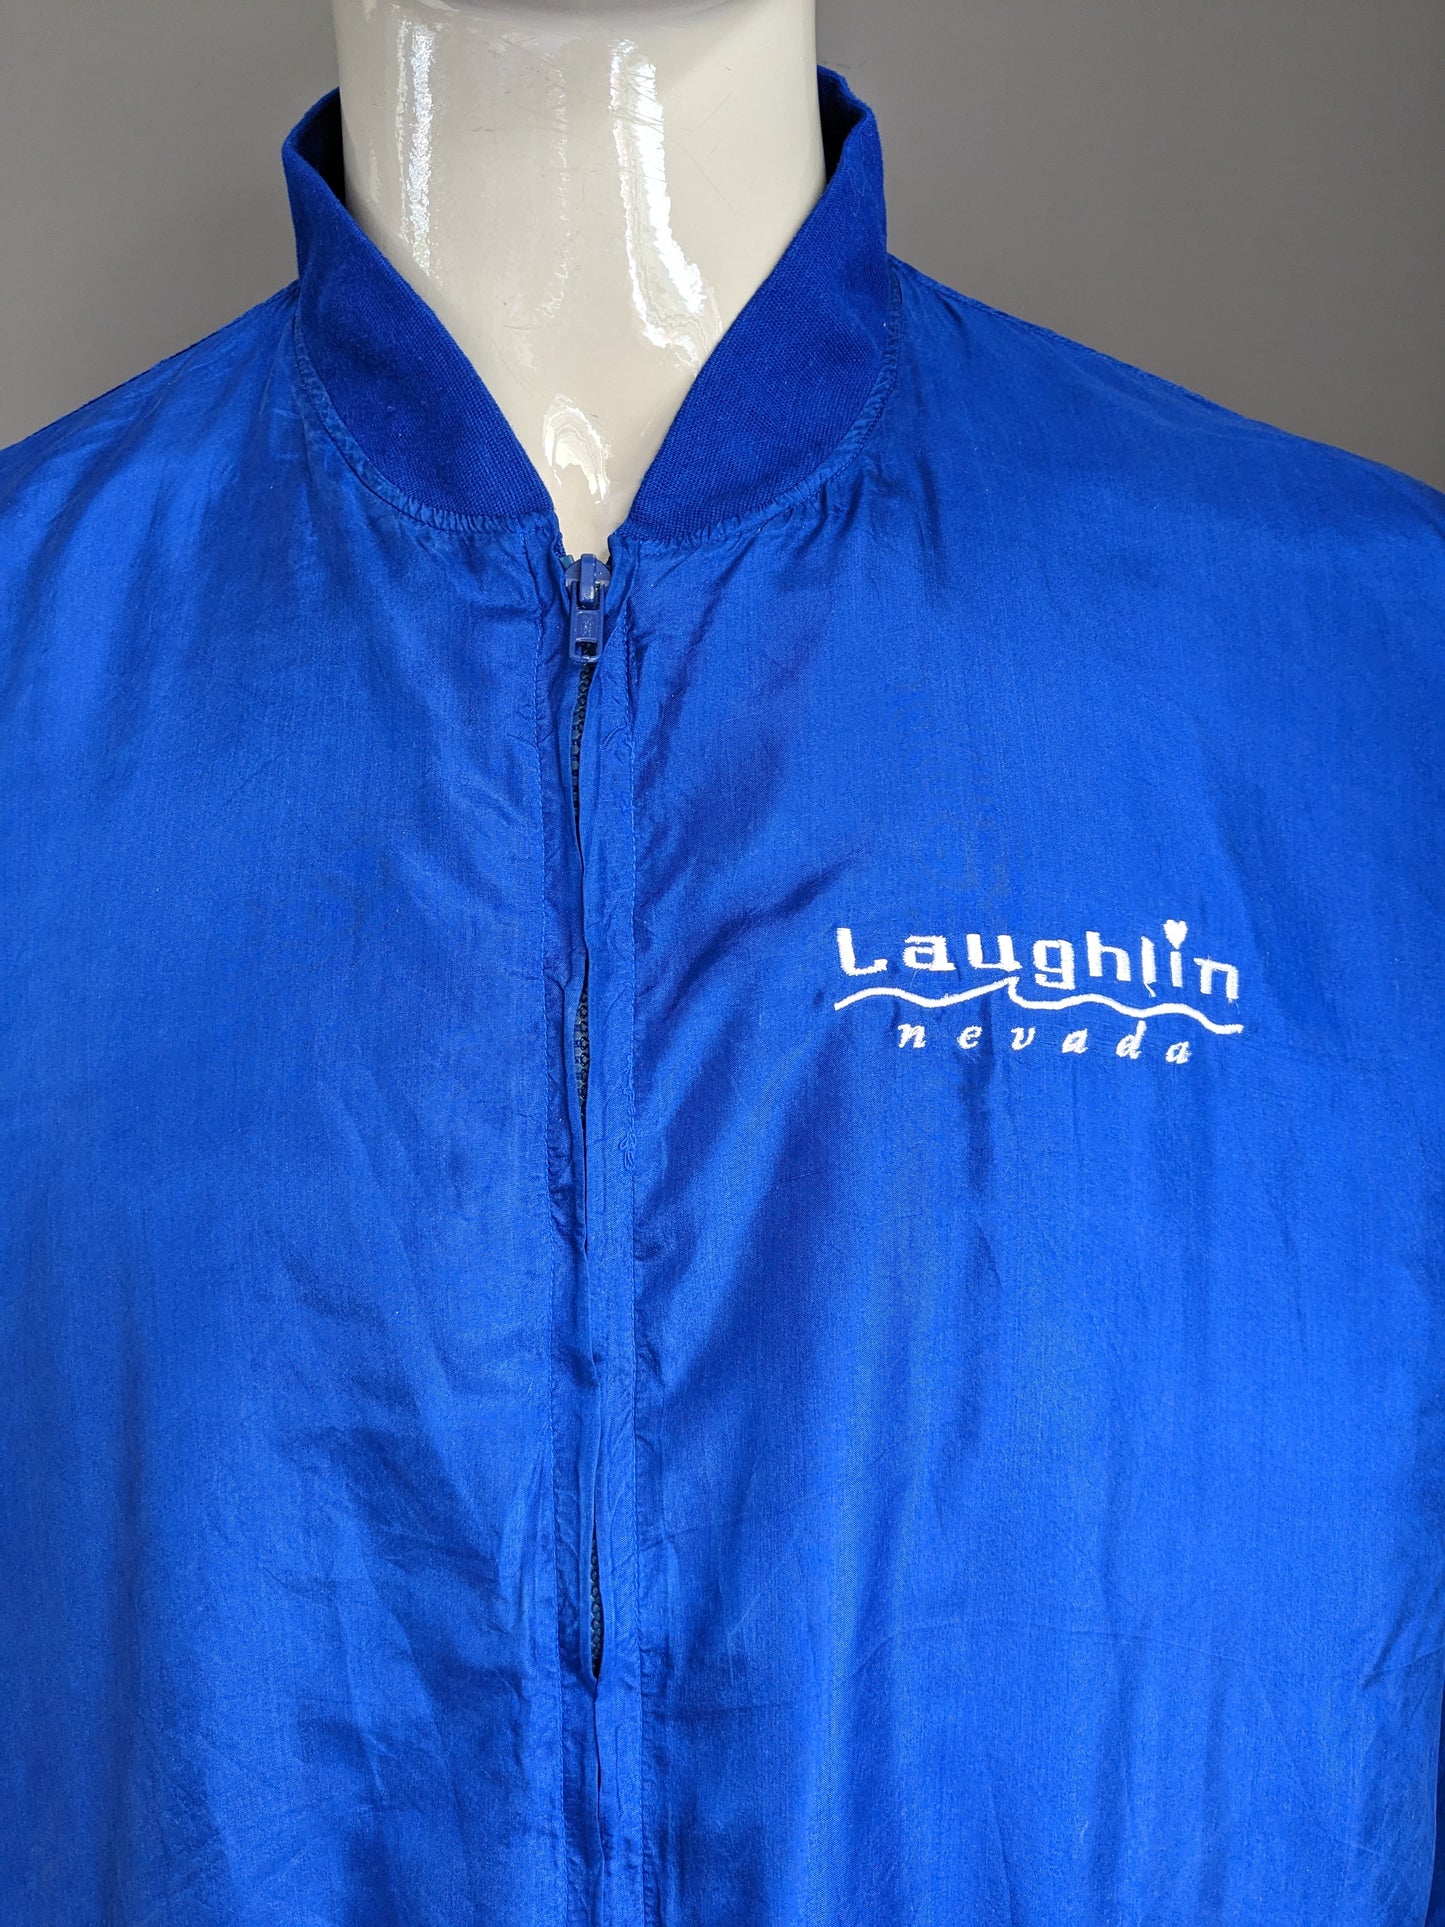 Vintage des années 80-90 Jack de sport pure de soie active. "Laughlin Nevada". Couleur bleue. Taille l / xl.